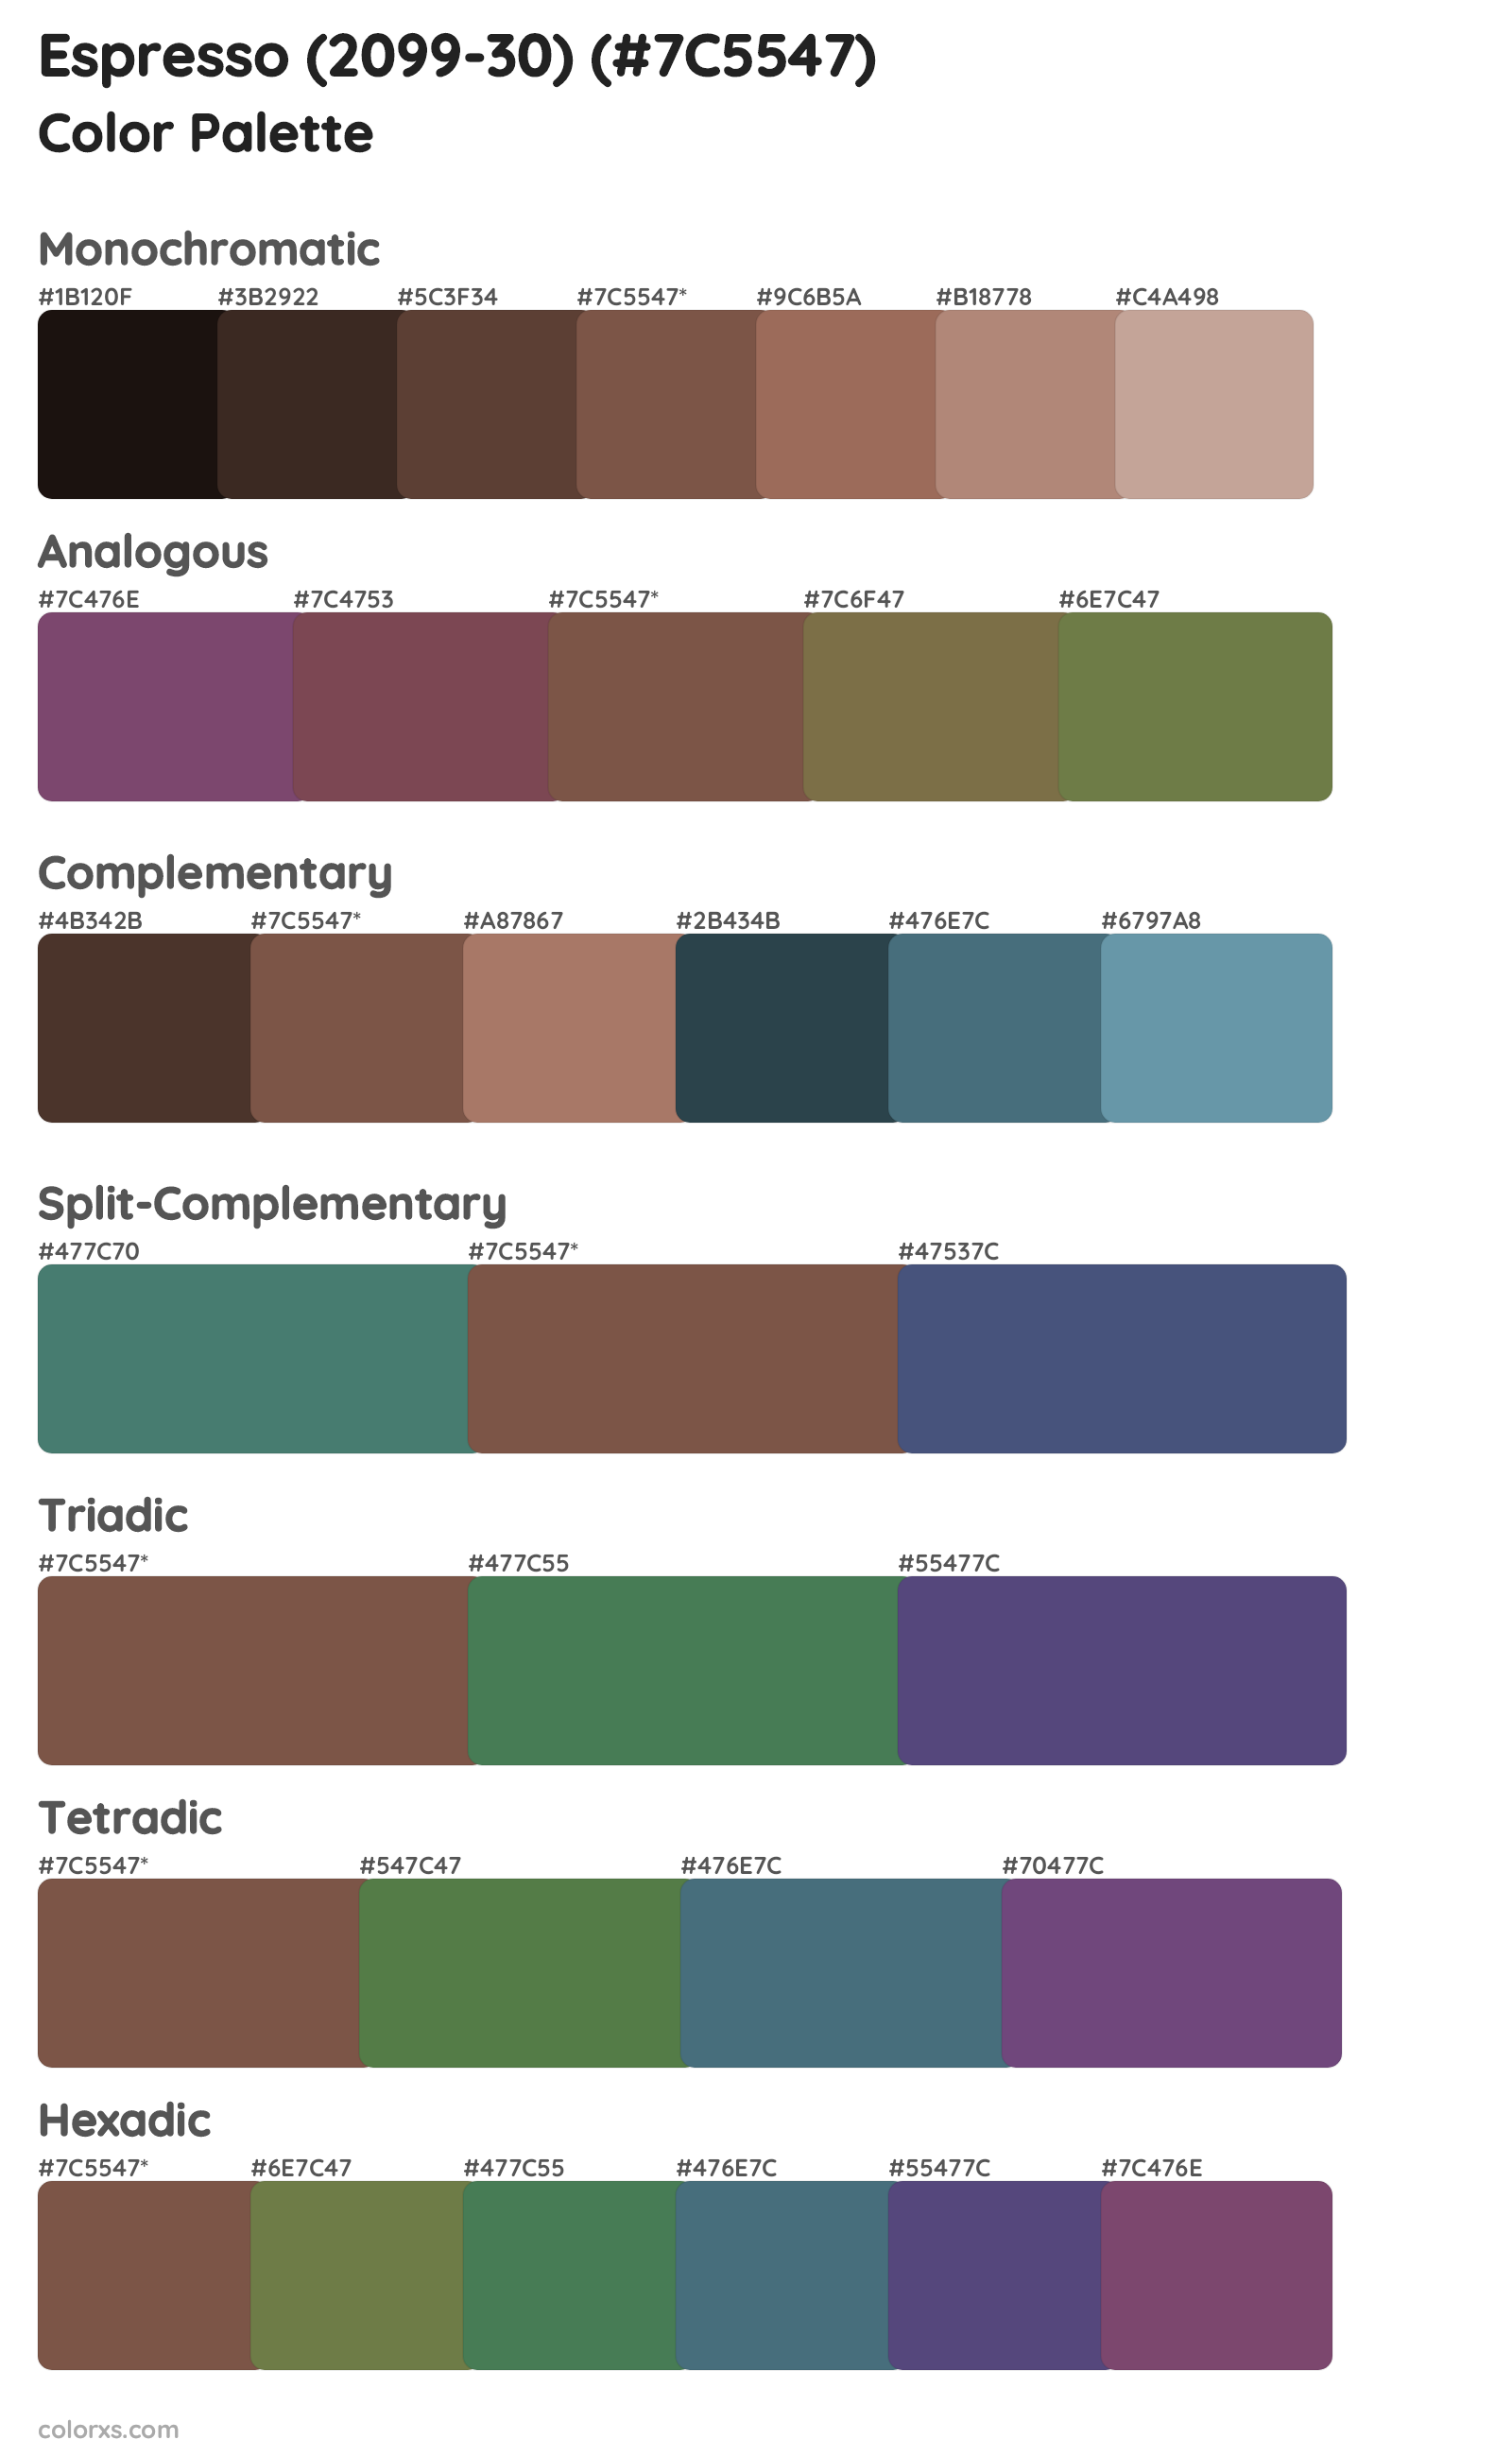 Espresso (2099-30) Color Scheme Palettes